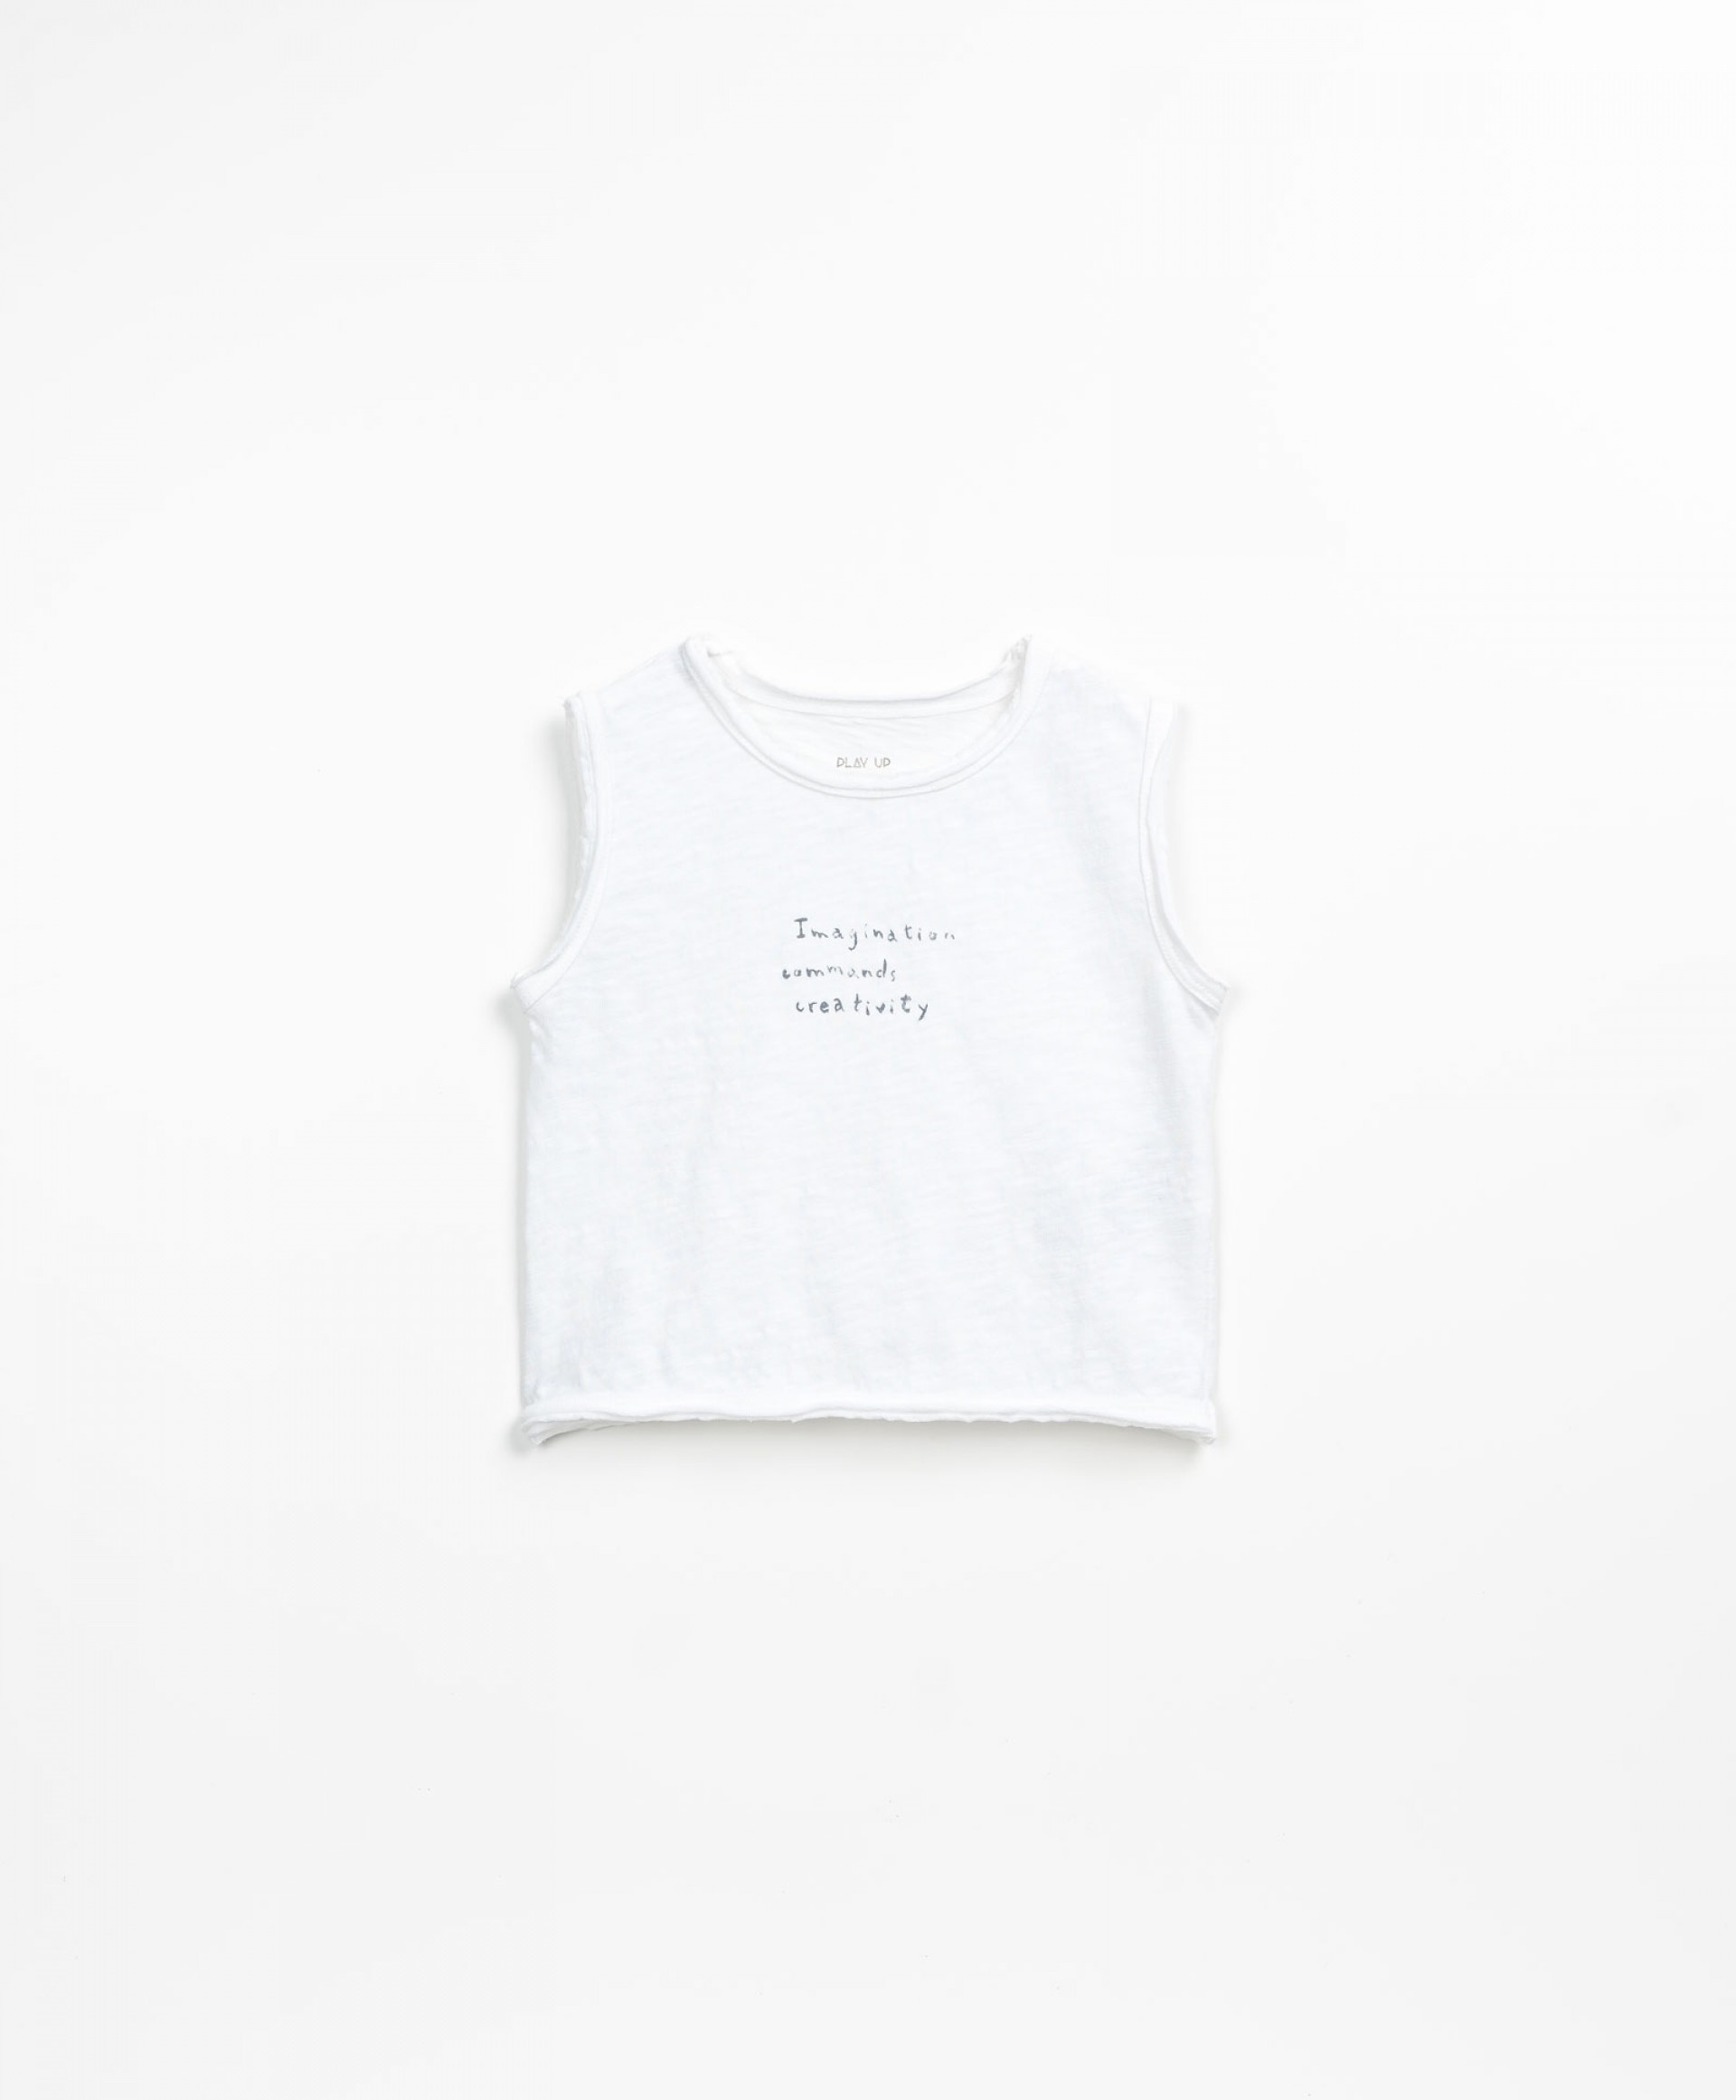 T-shirt avec une phrase sur la poitrine | Textile Art